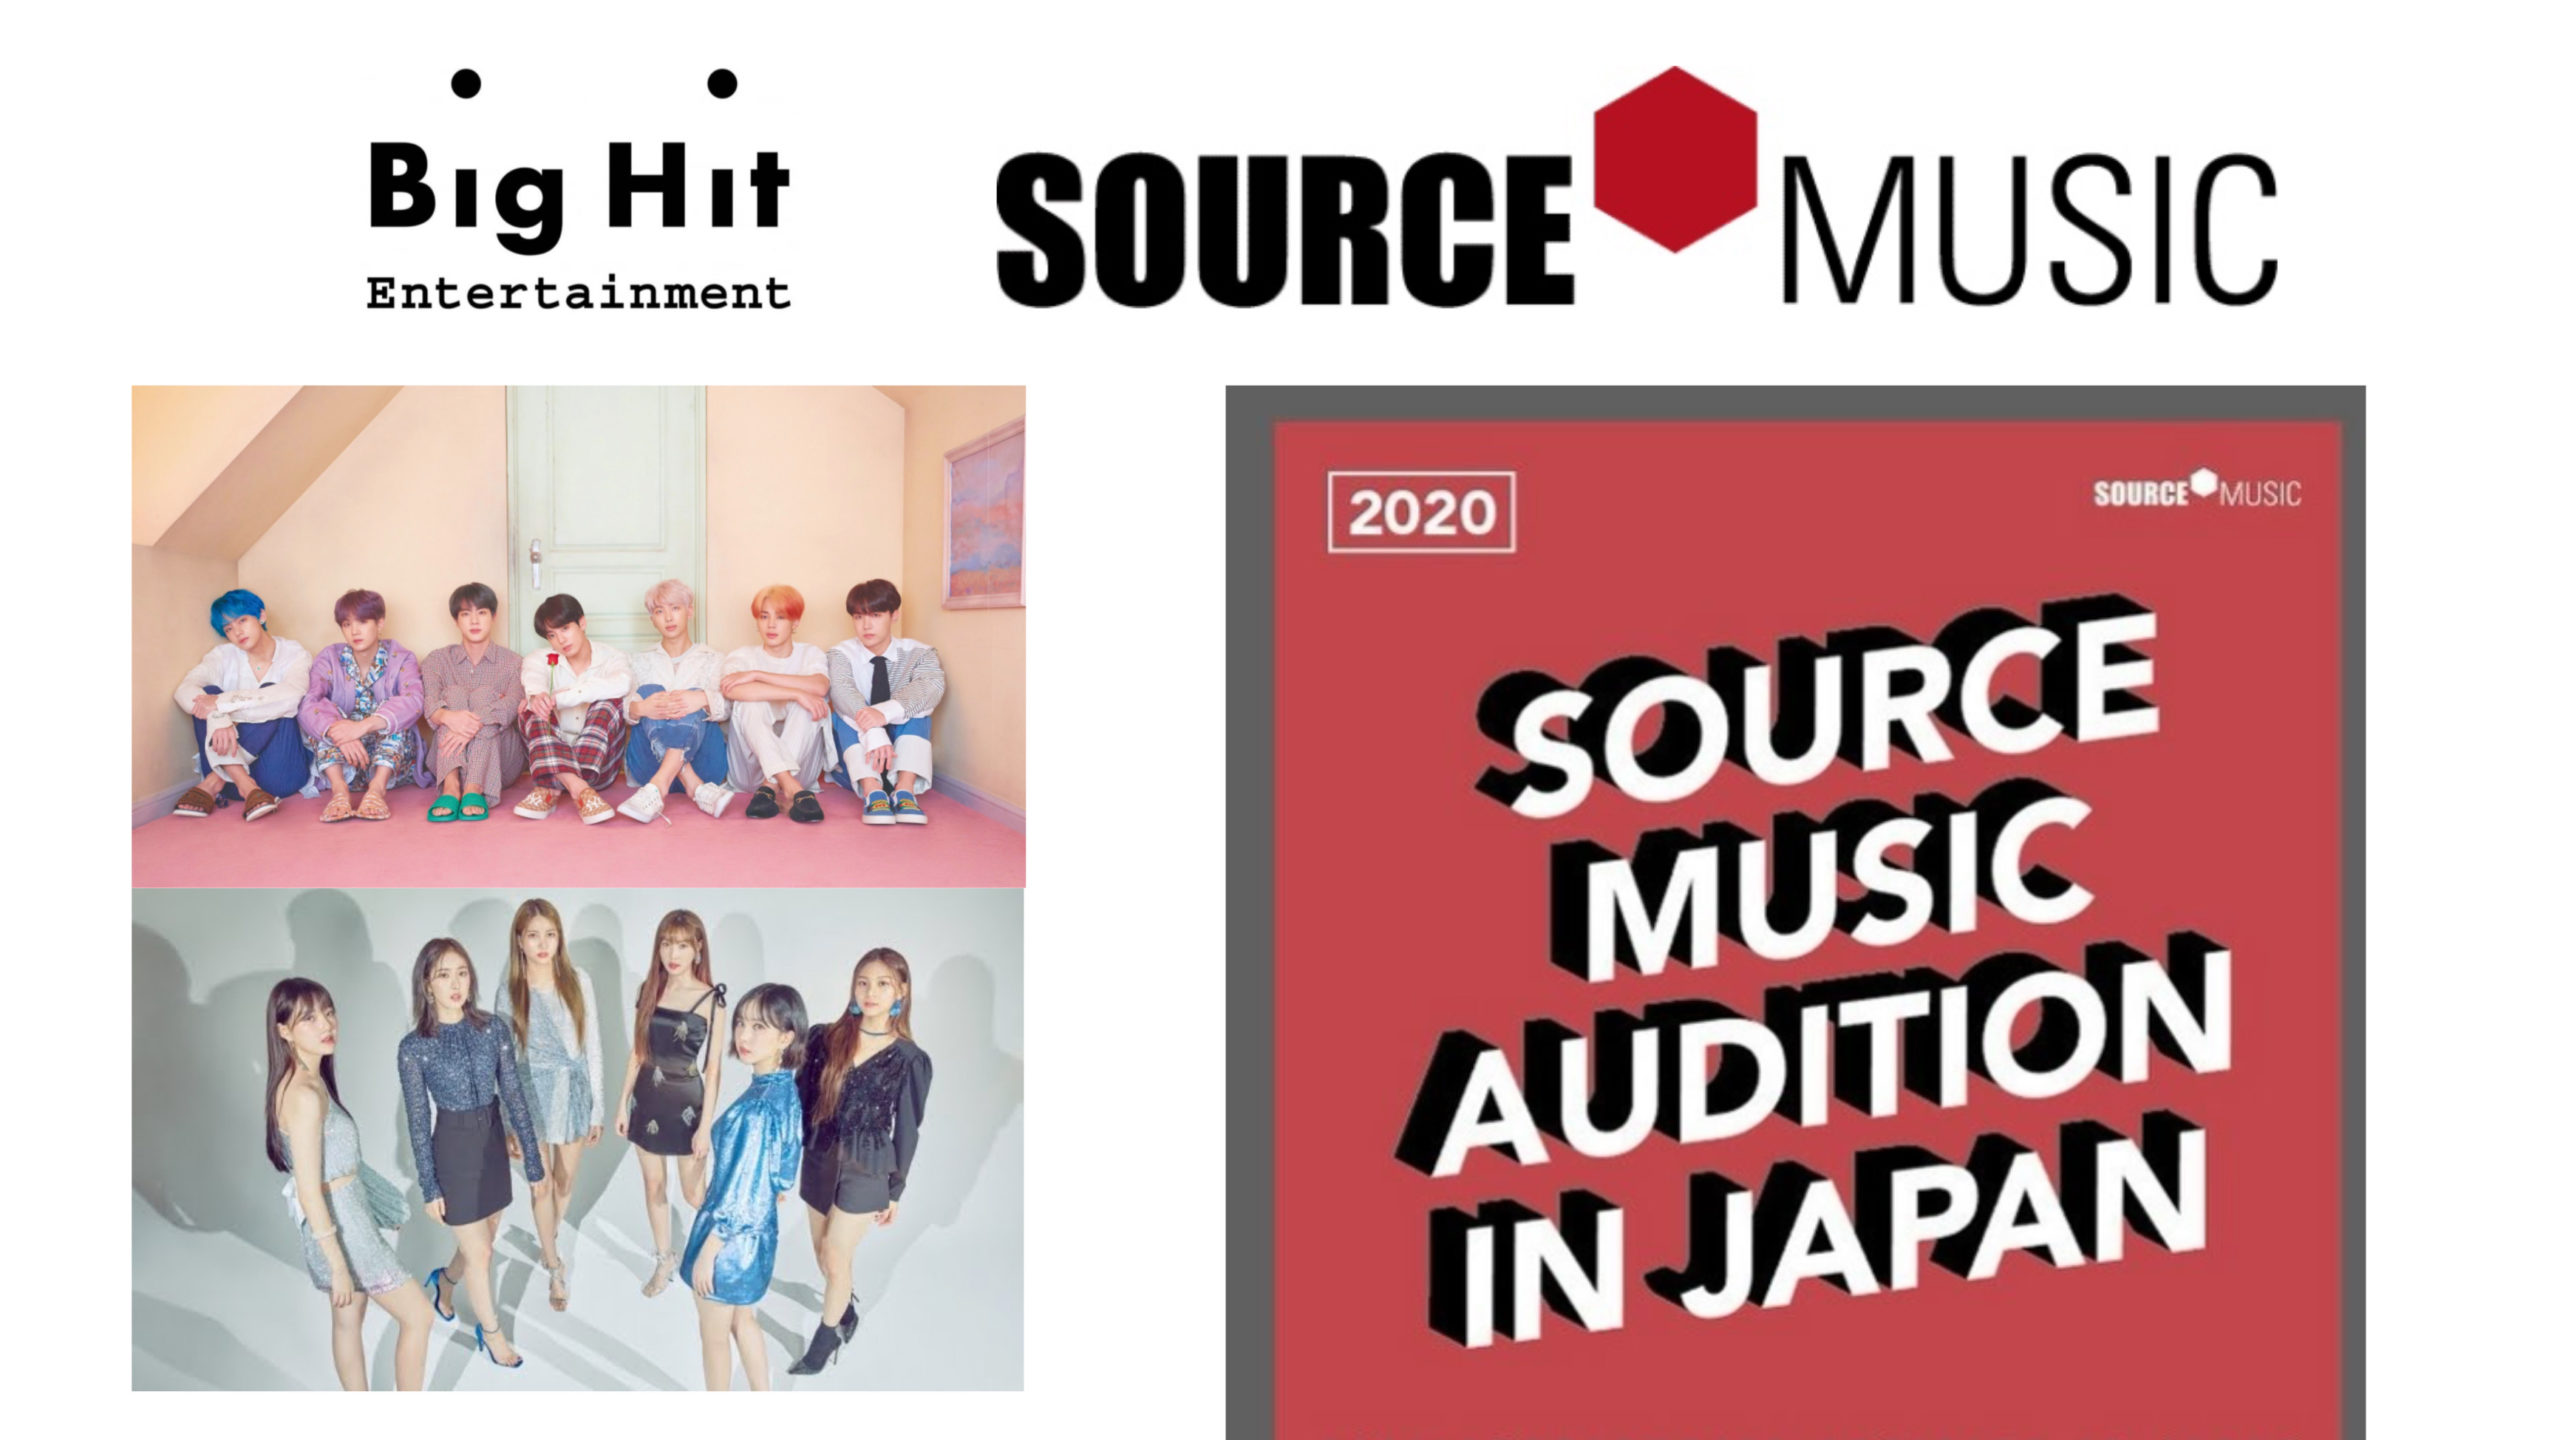 ミュージック ソース ソースミュージックの新しいガールグループ、宮脇咲良とキム・チェウォンが名前を発表+ソーシャルメディアアカウントを開始